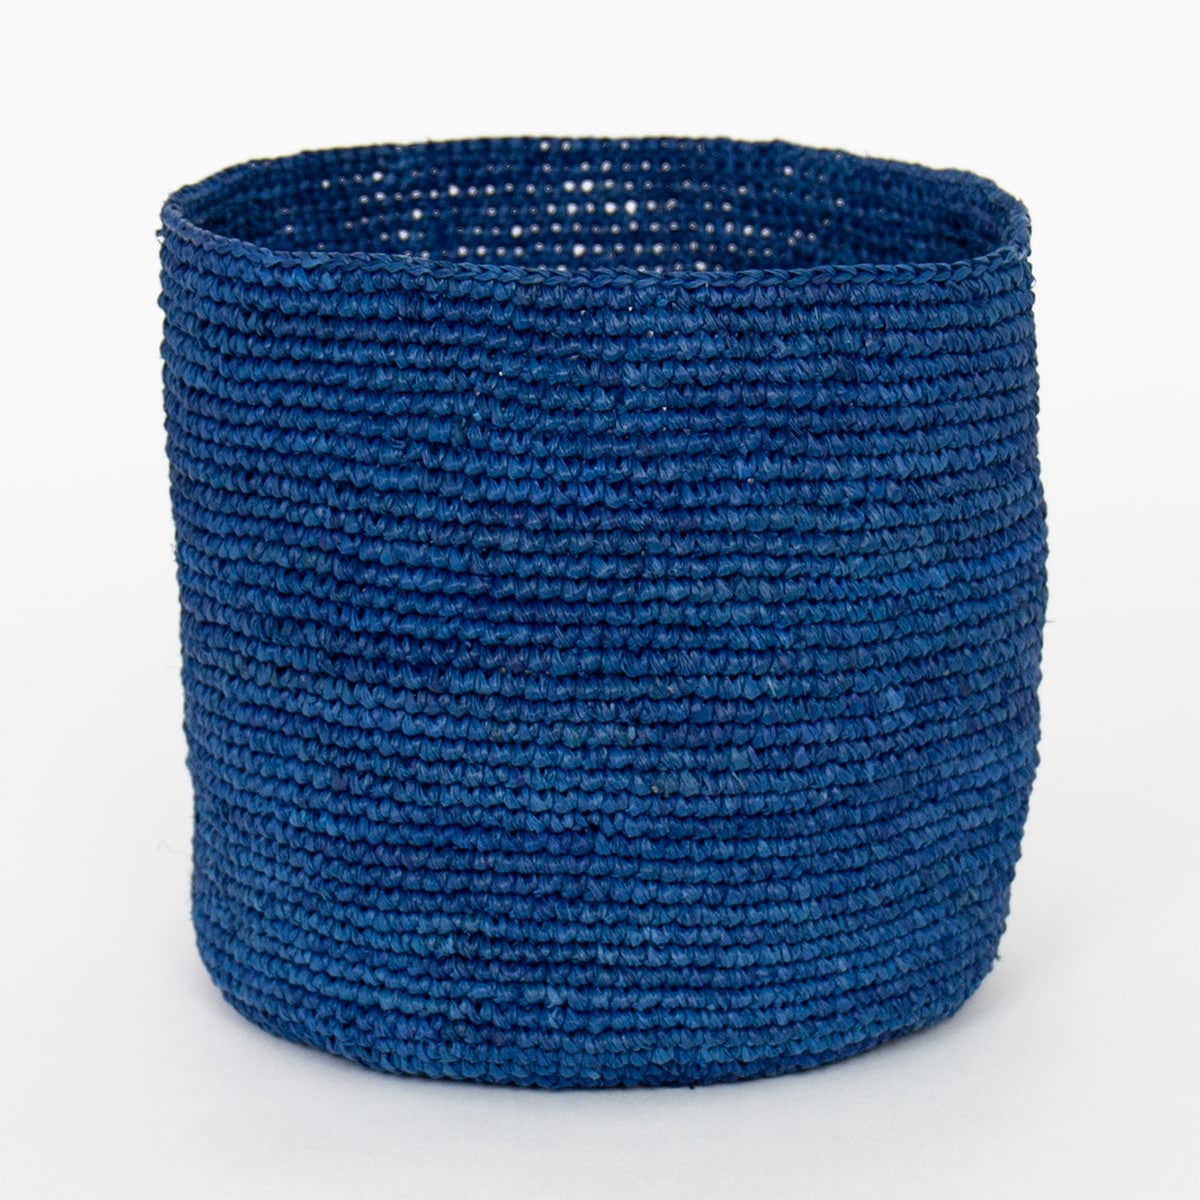 RAFFIA Basket M, blue